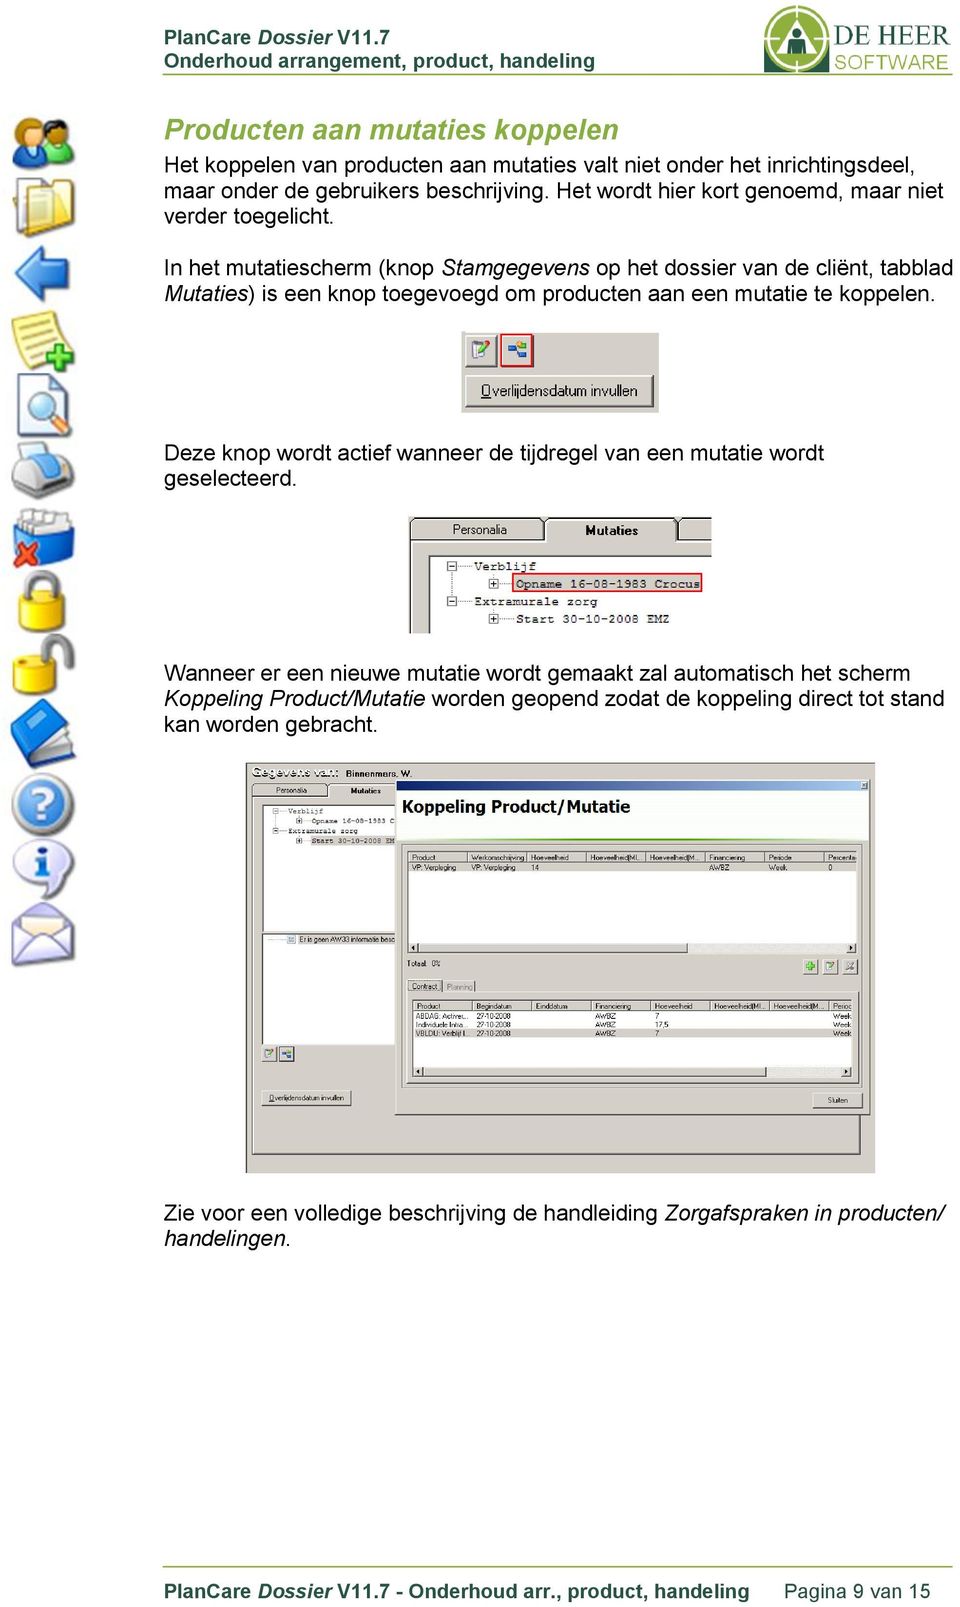 In het mutatiescherm (knop Stamgegevens op het dossier van de cliënt, tabblad Mutaties) is een knop toegevoegd om producten aan een mutatie te koppelen.